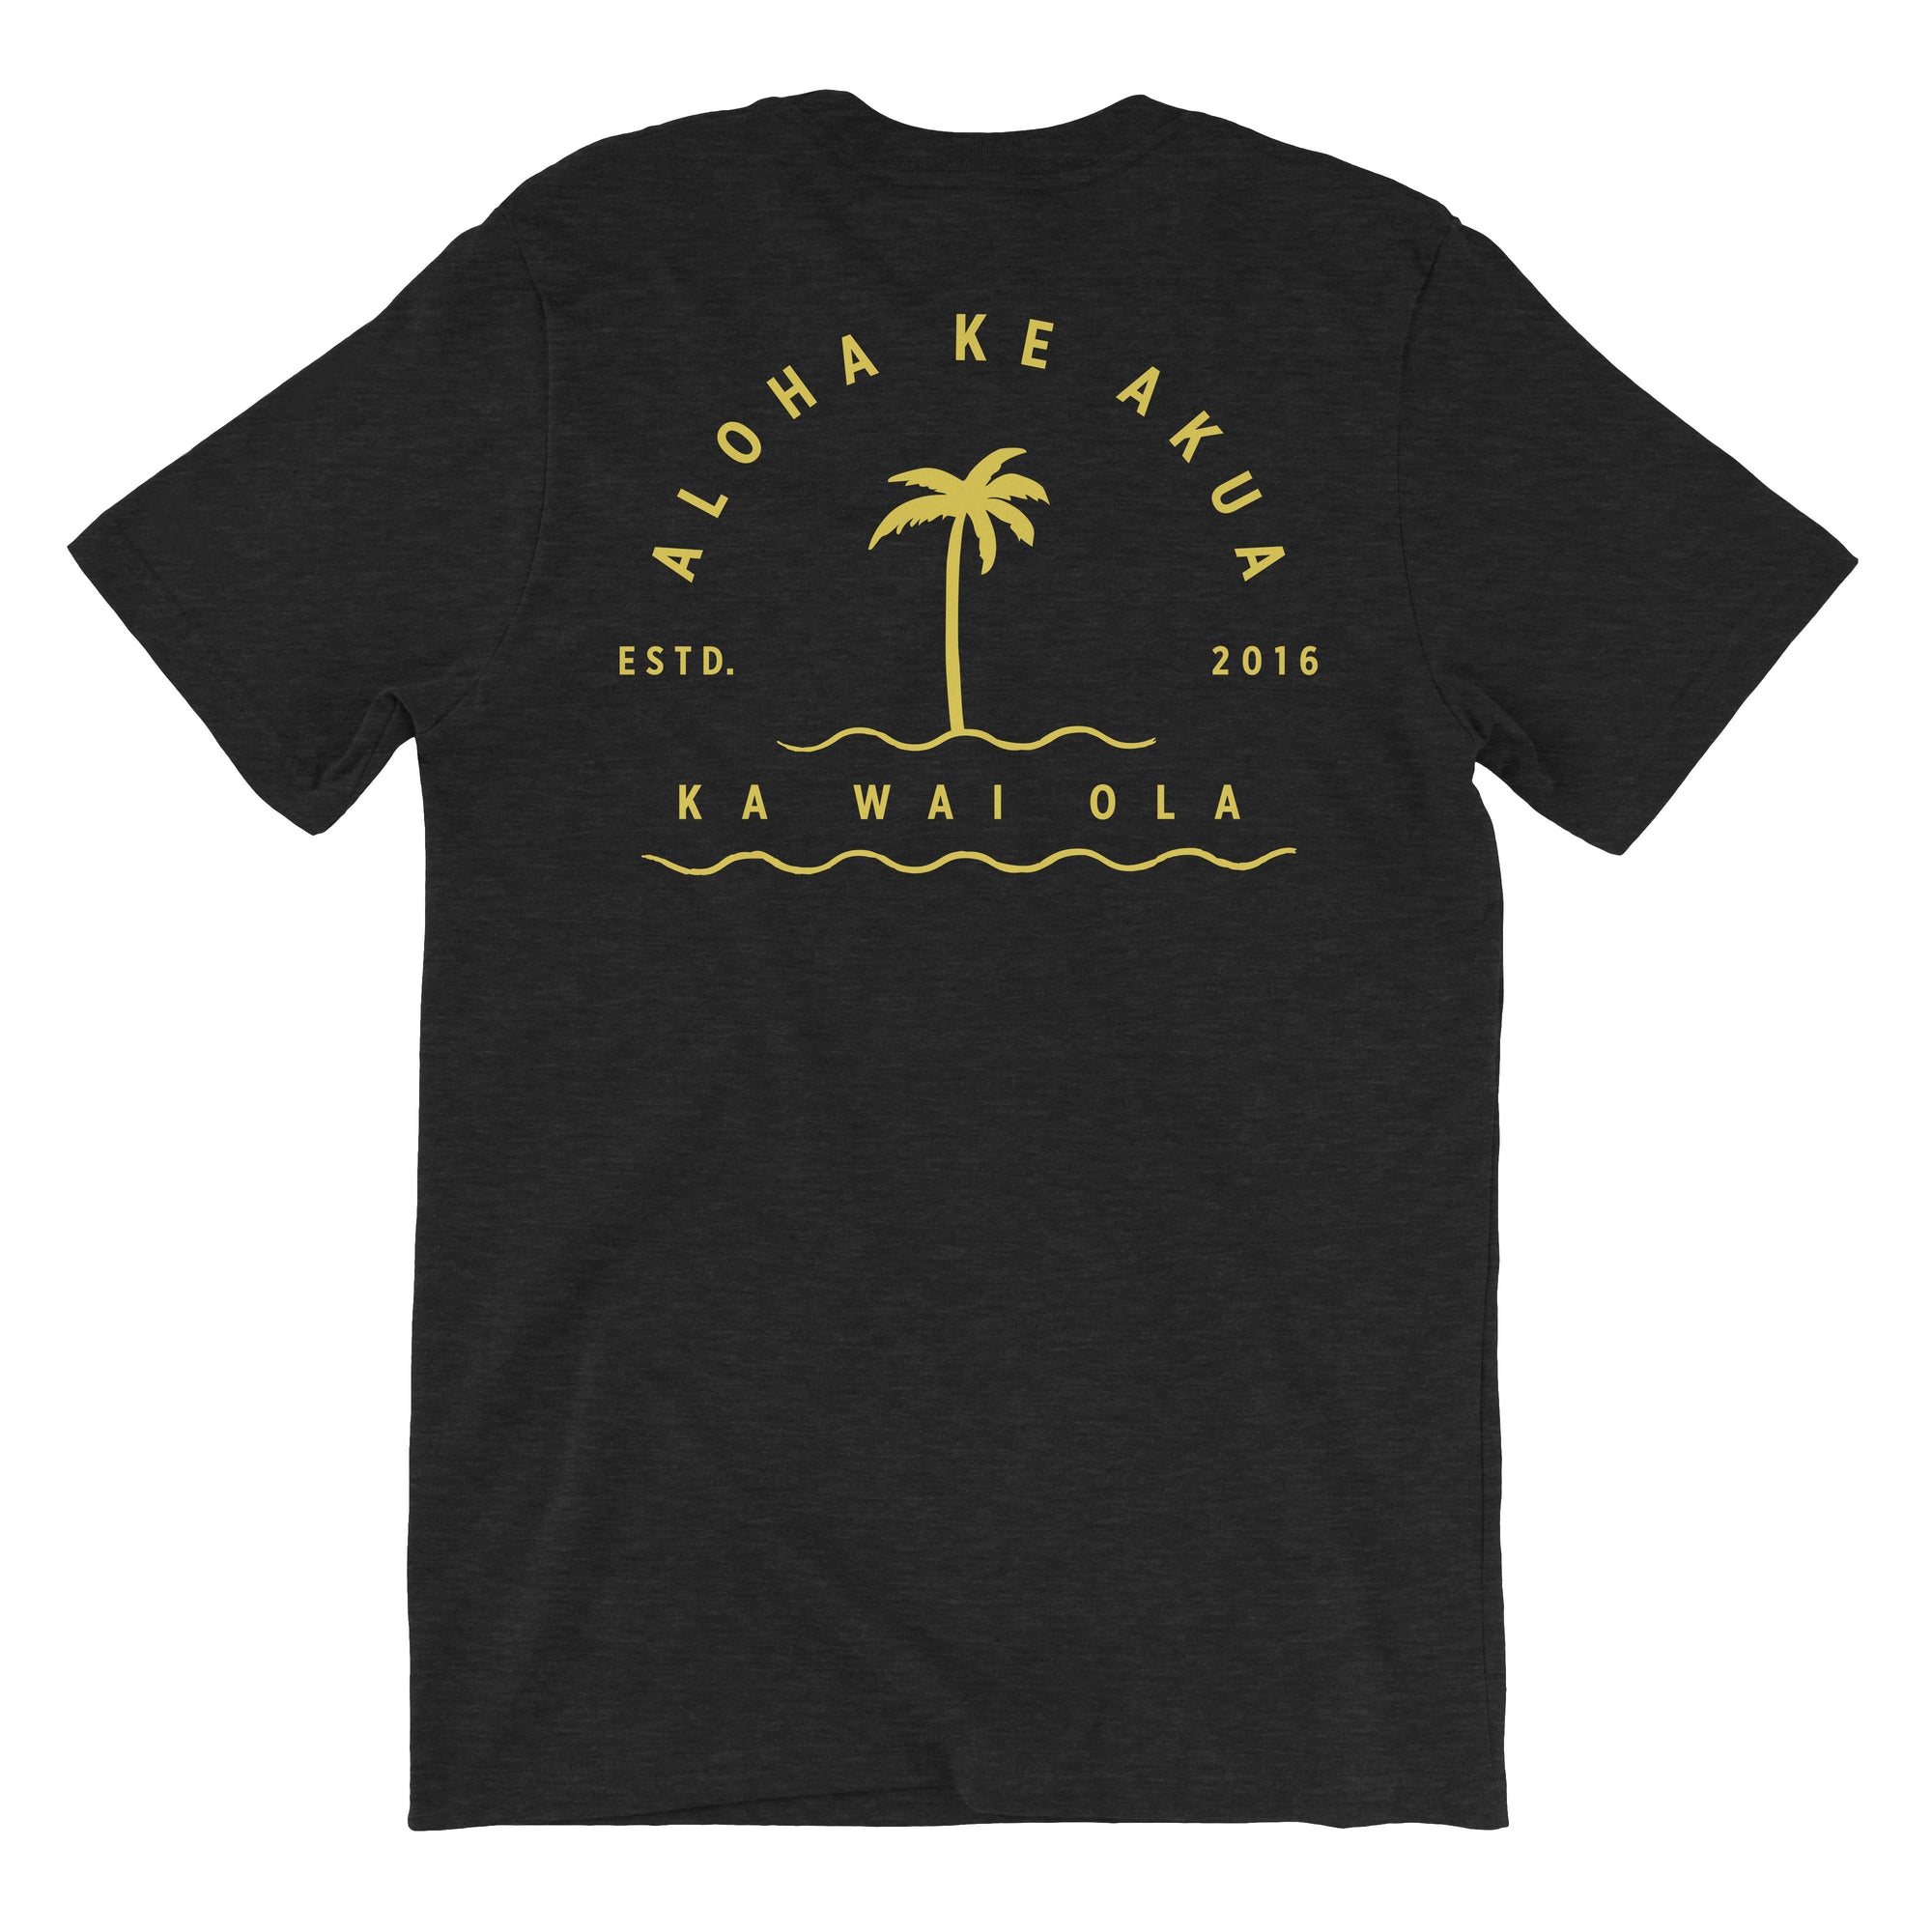 Pop-Up Mākeke - Aloha Ke Akua Clothing - Ka Wai Ola Men's Short Sleeve T-Shirt - Black Heather - Back View